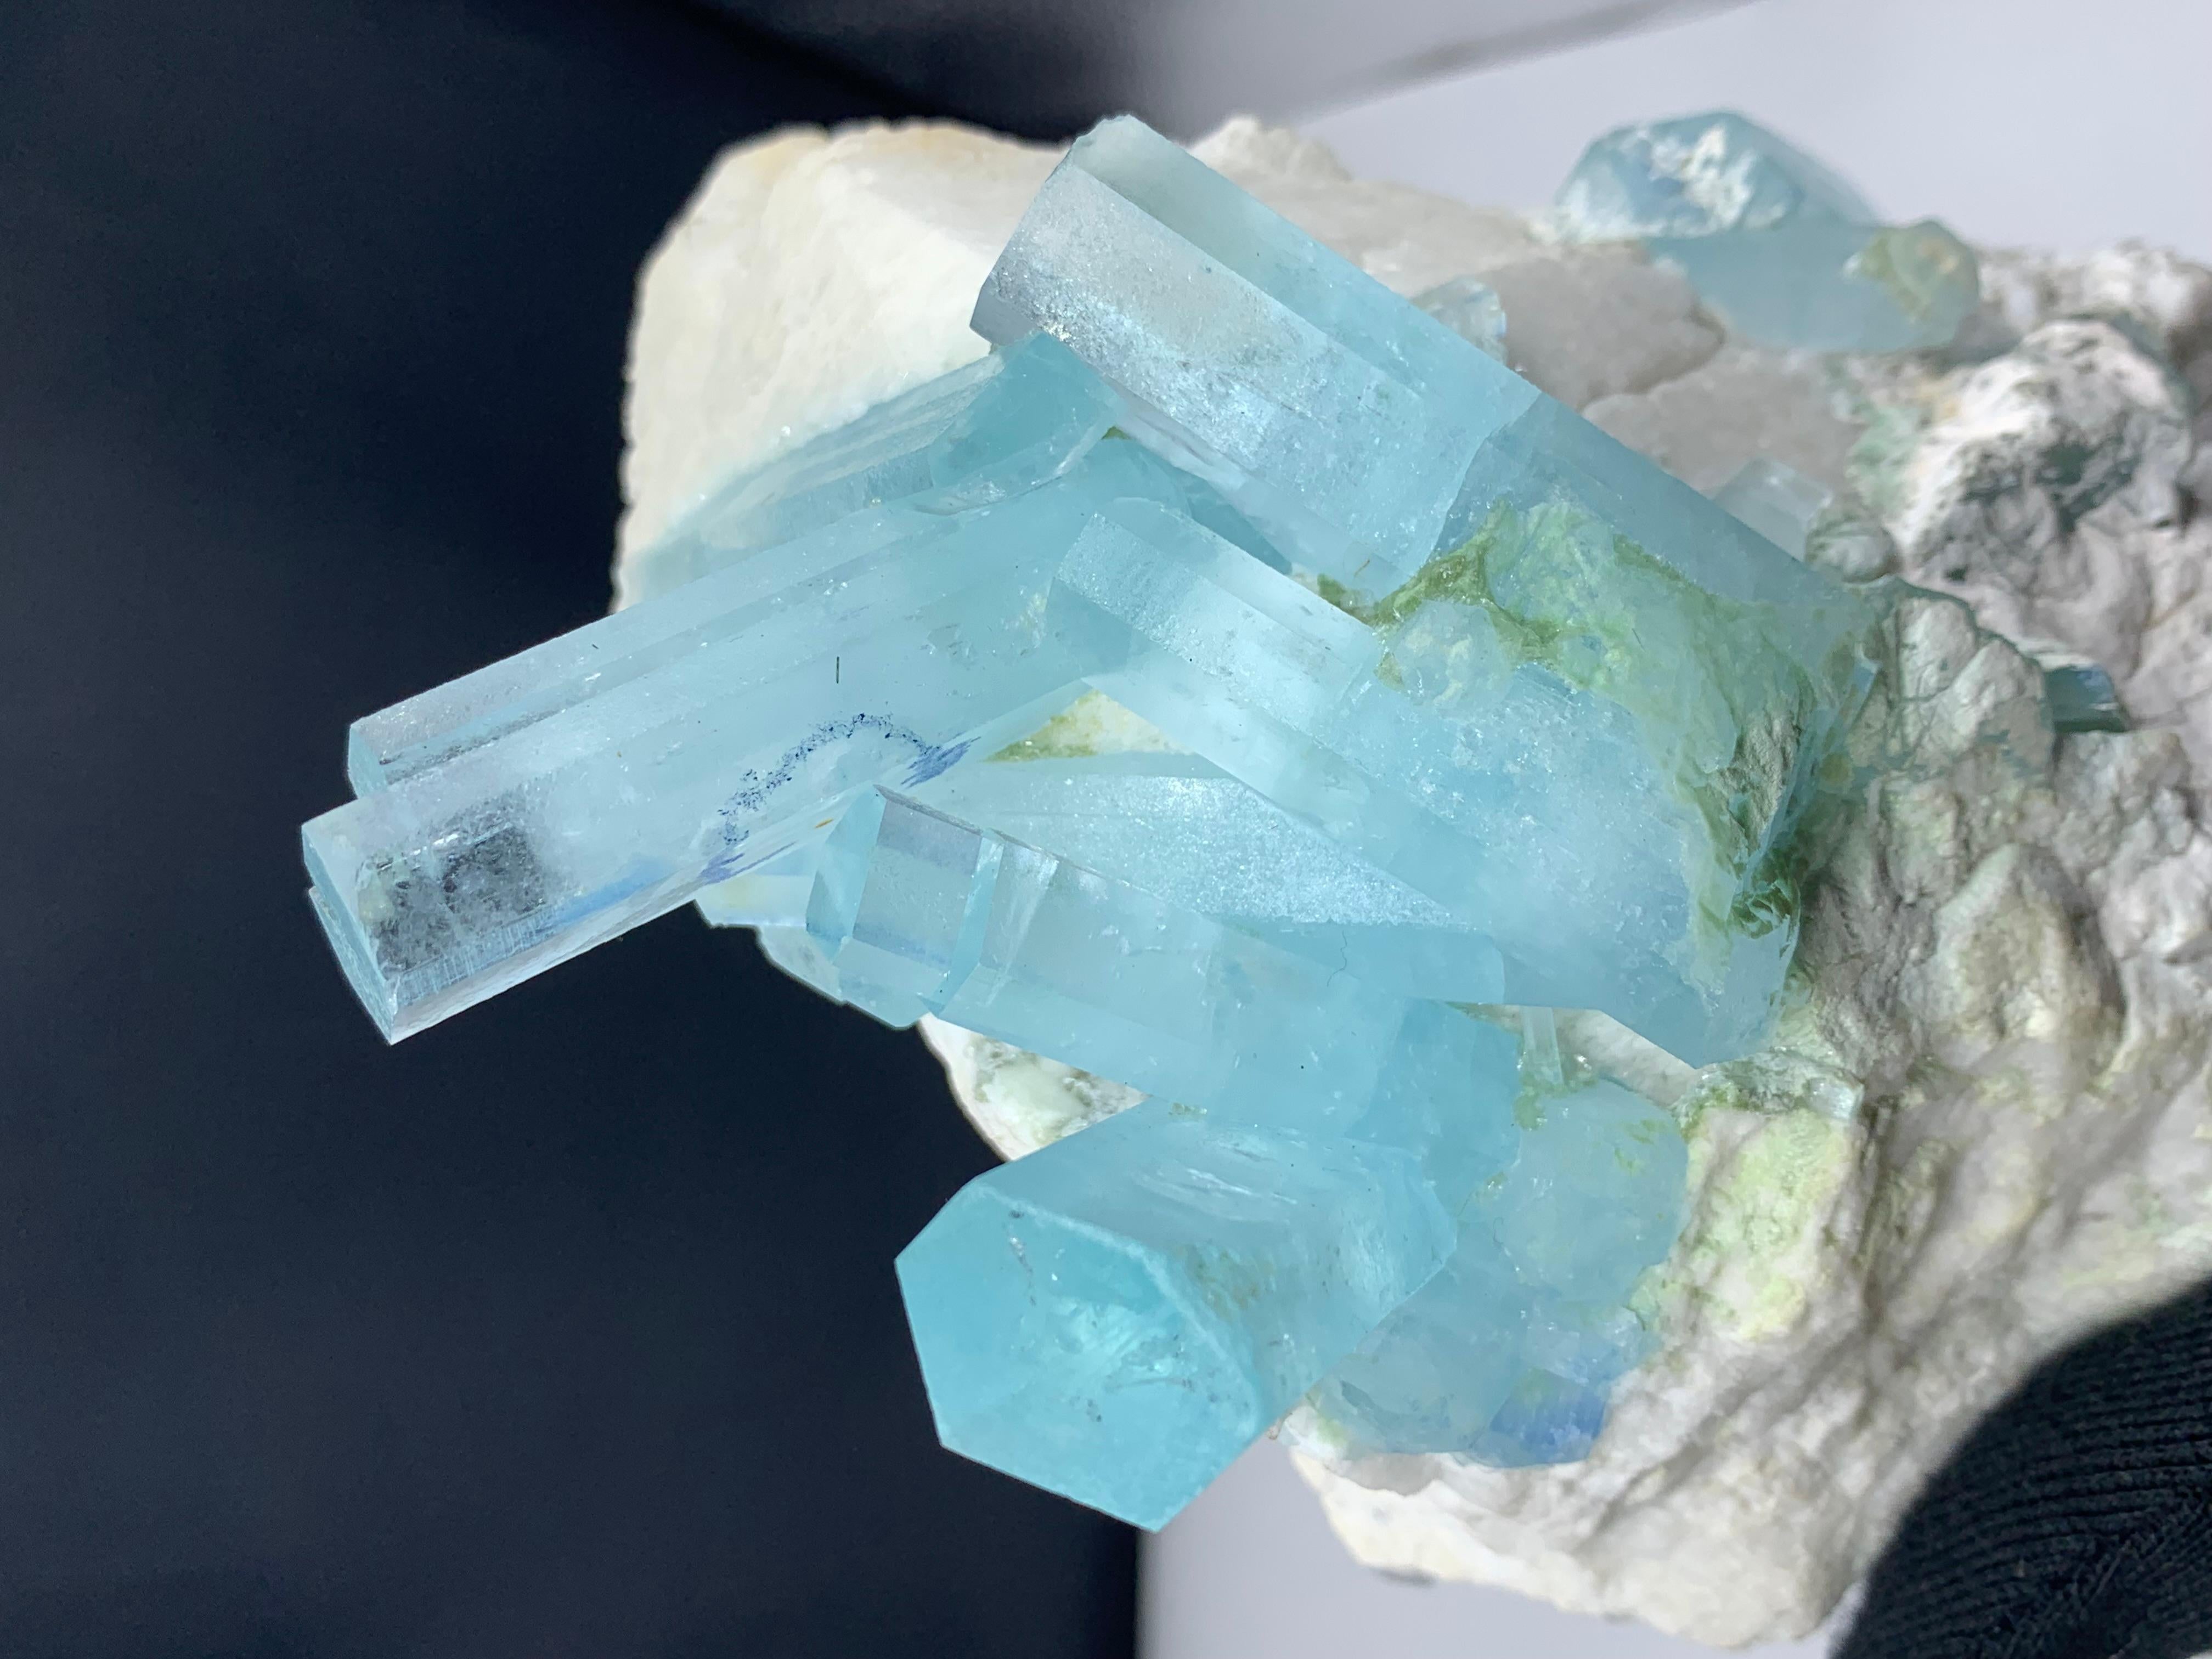 Rock Crystal 2 kg Plus Pretty Aquamarine Crystal Bunch Attach With Feldspar From Pakistan  For Sale